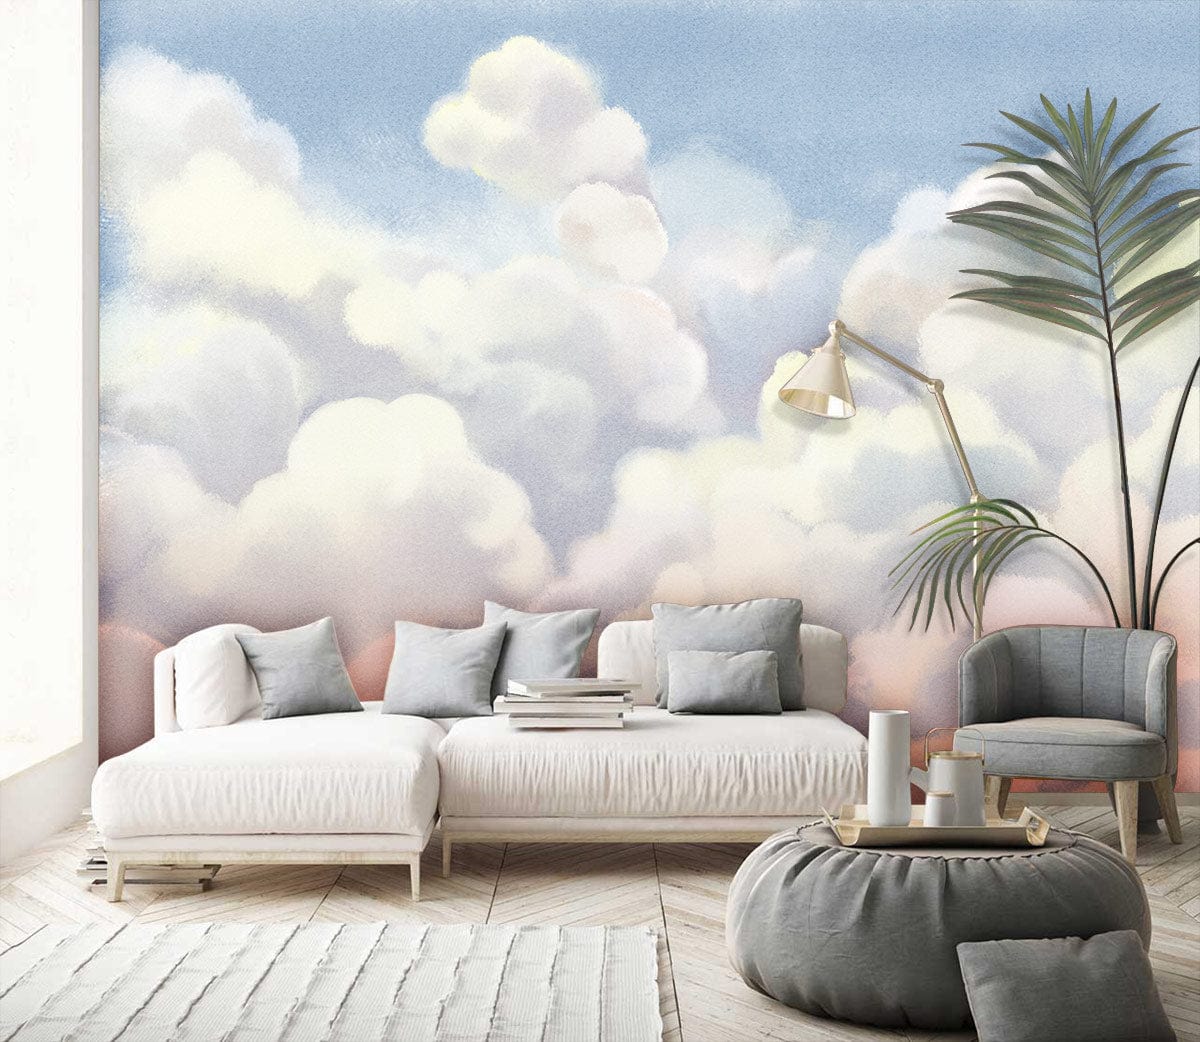 Ombre Clouds Landscape Wallpaper Mural Home Interior Decor